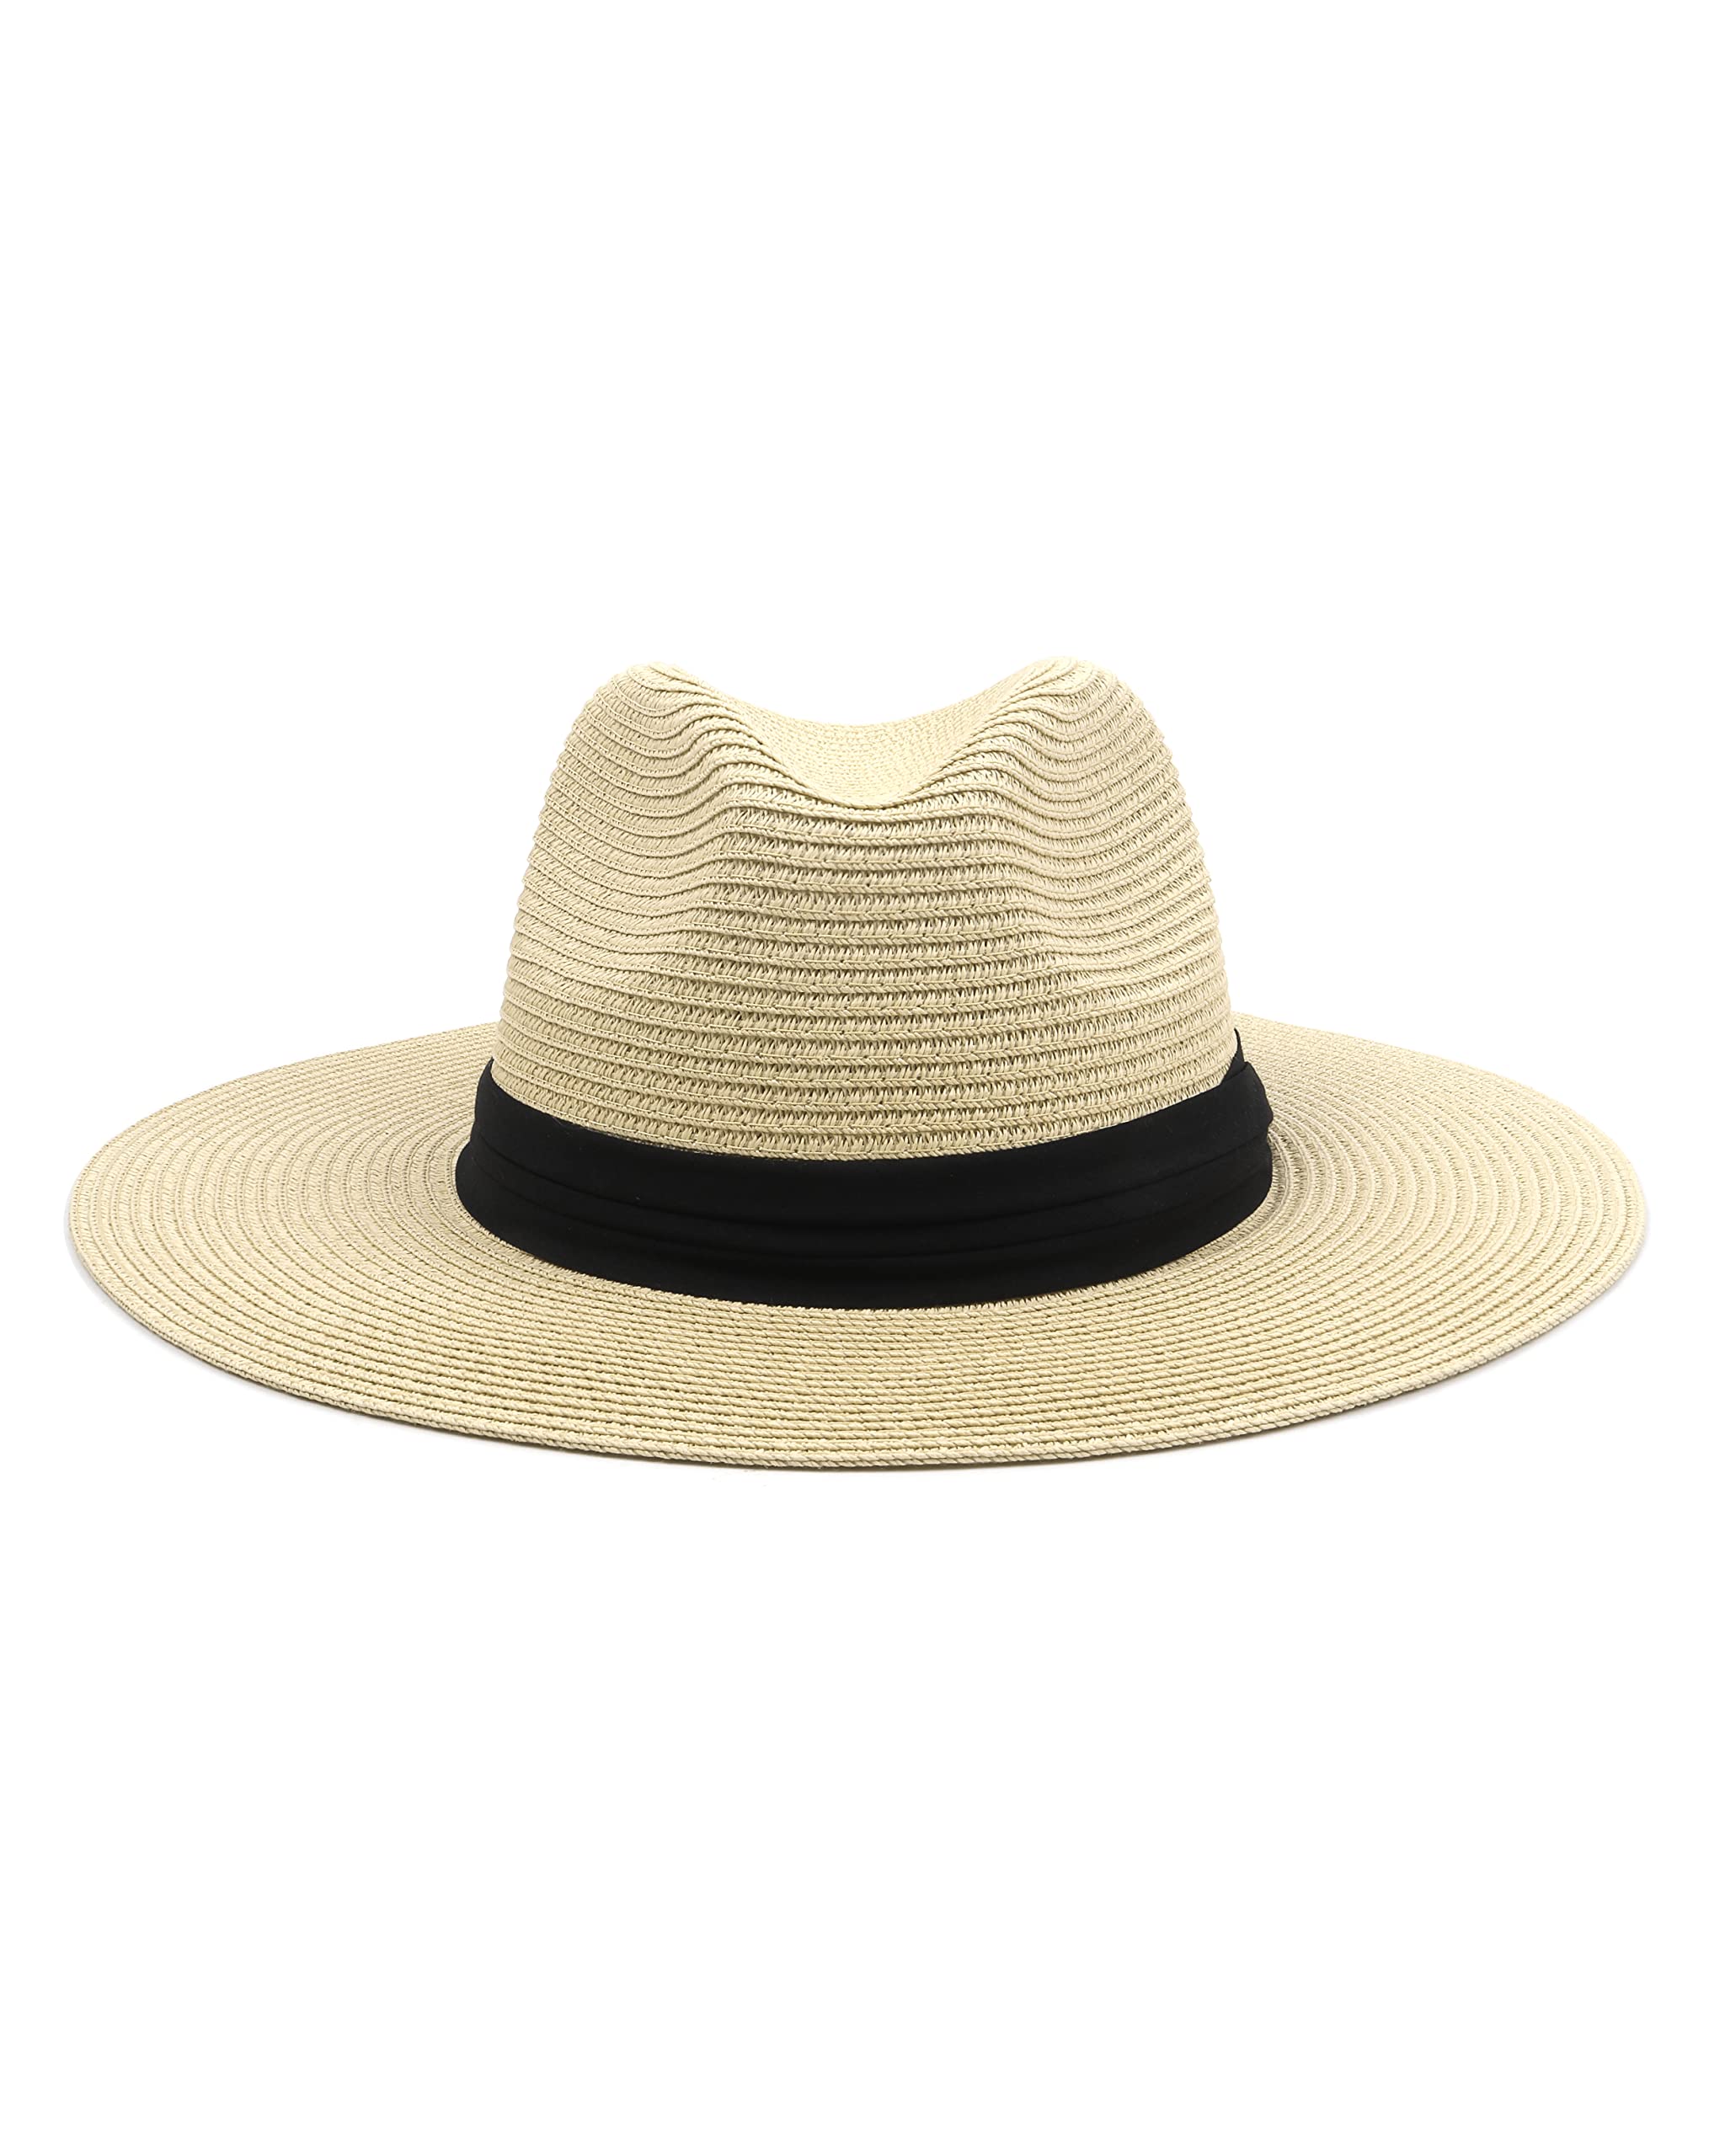 送料無料Zylioo Large Head Womens Beach HatsMens Straw Panama HatFoldable Summer UV HatPackable Travel Sun Hats並行